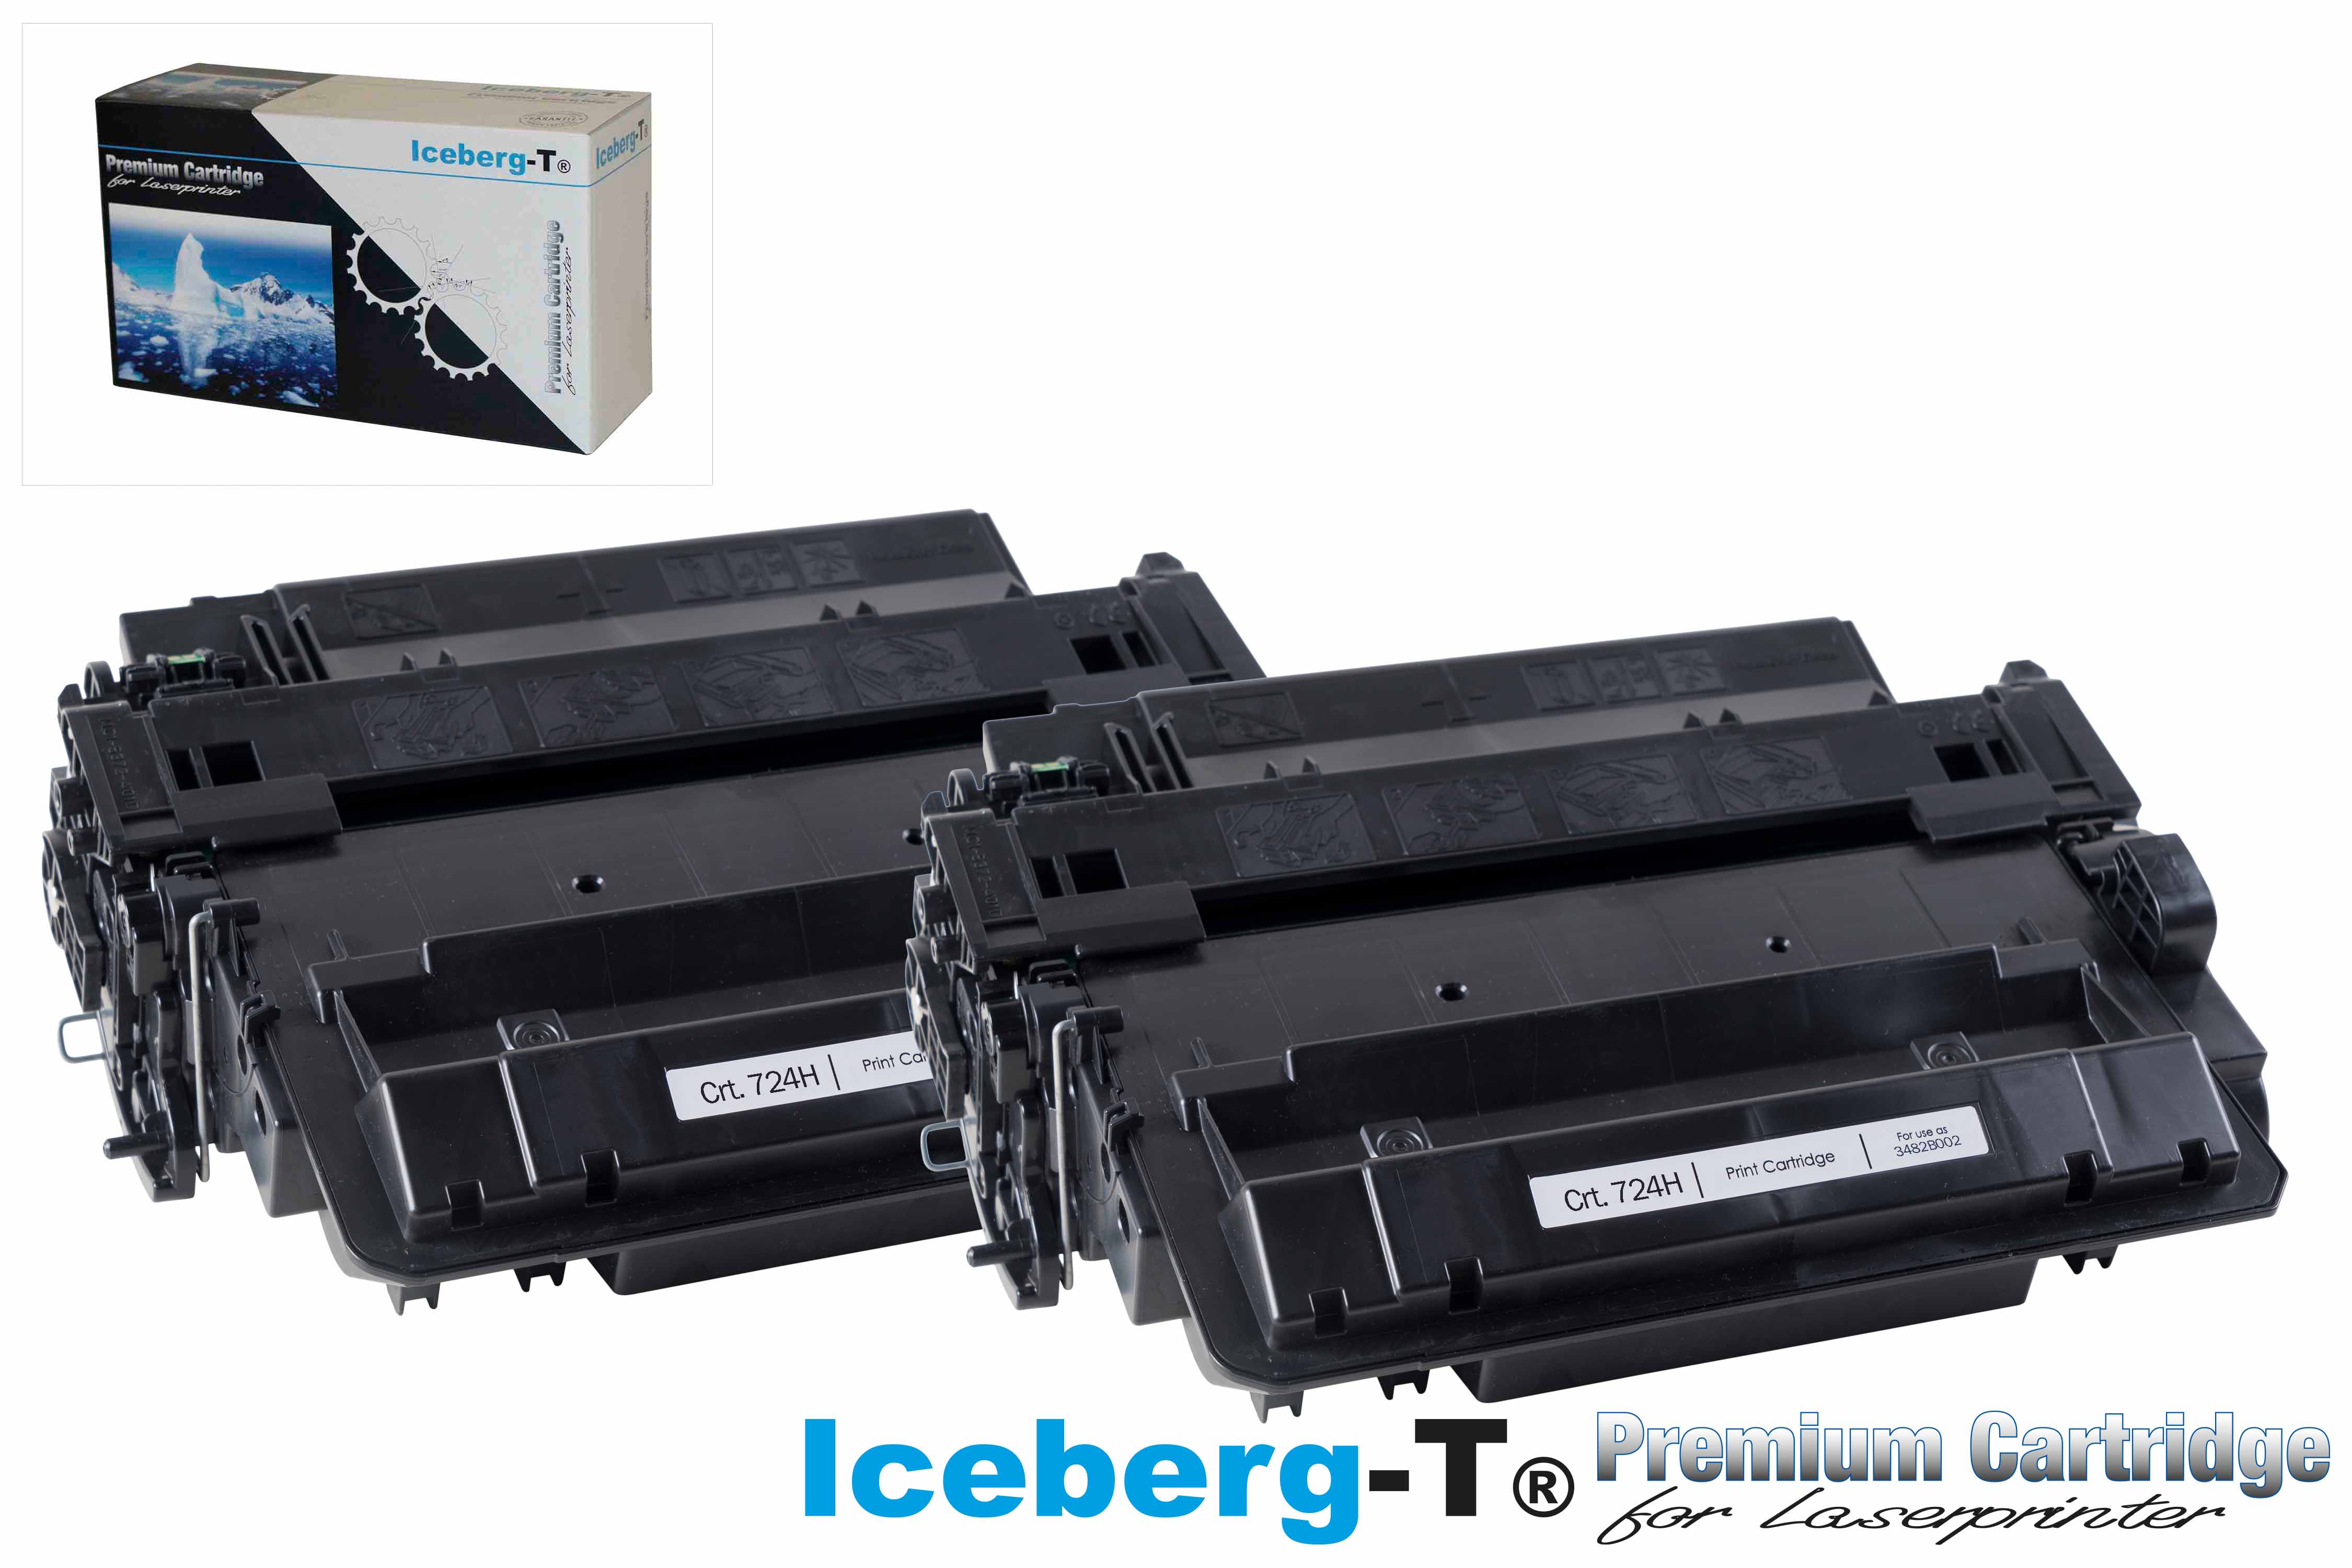 Iceberg-T Toner Crt. 724H DuoPack 2 Stück à 12'500 Seiten, schwarz